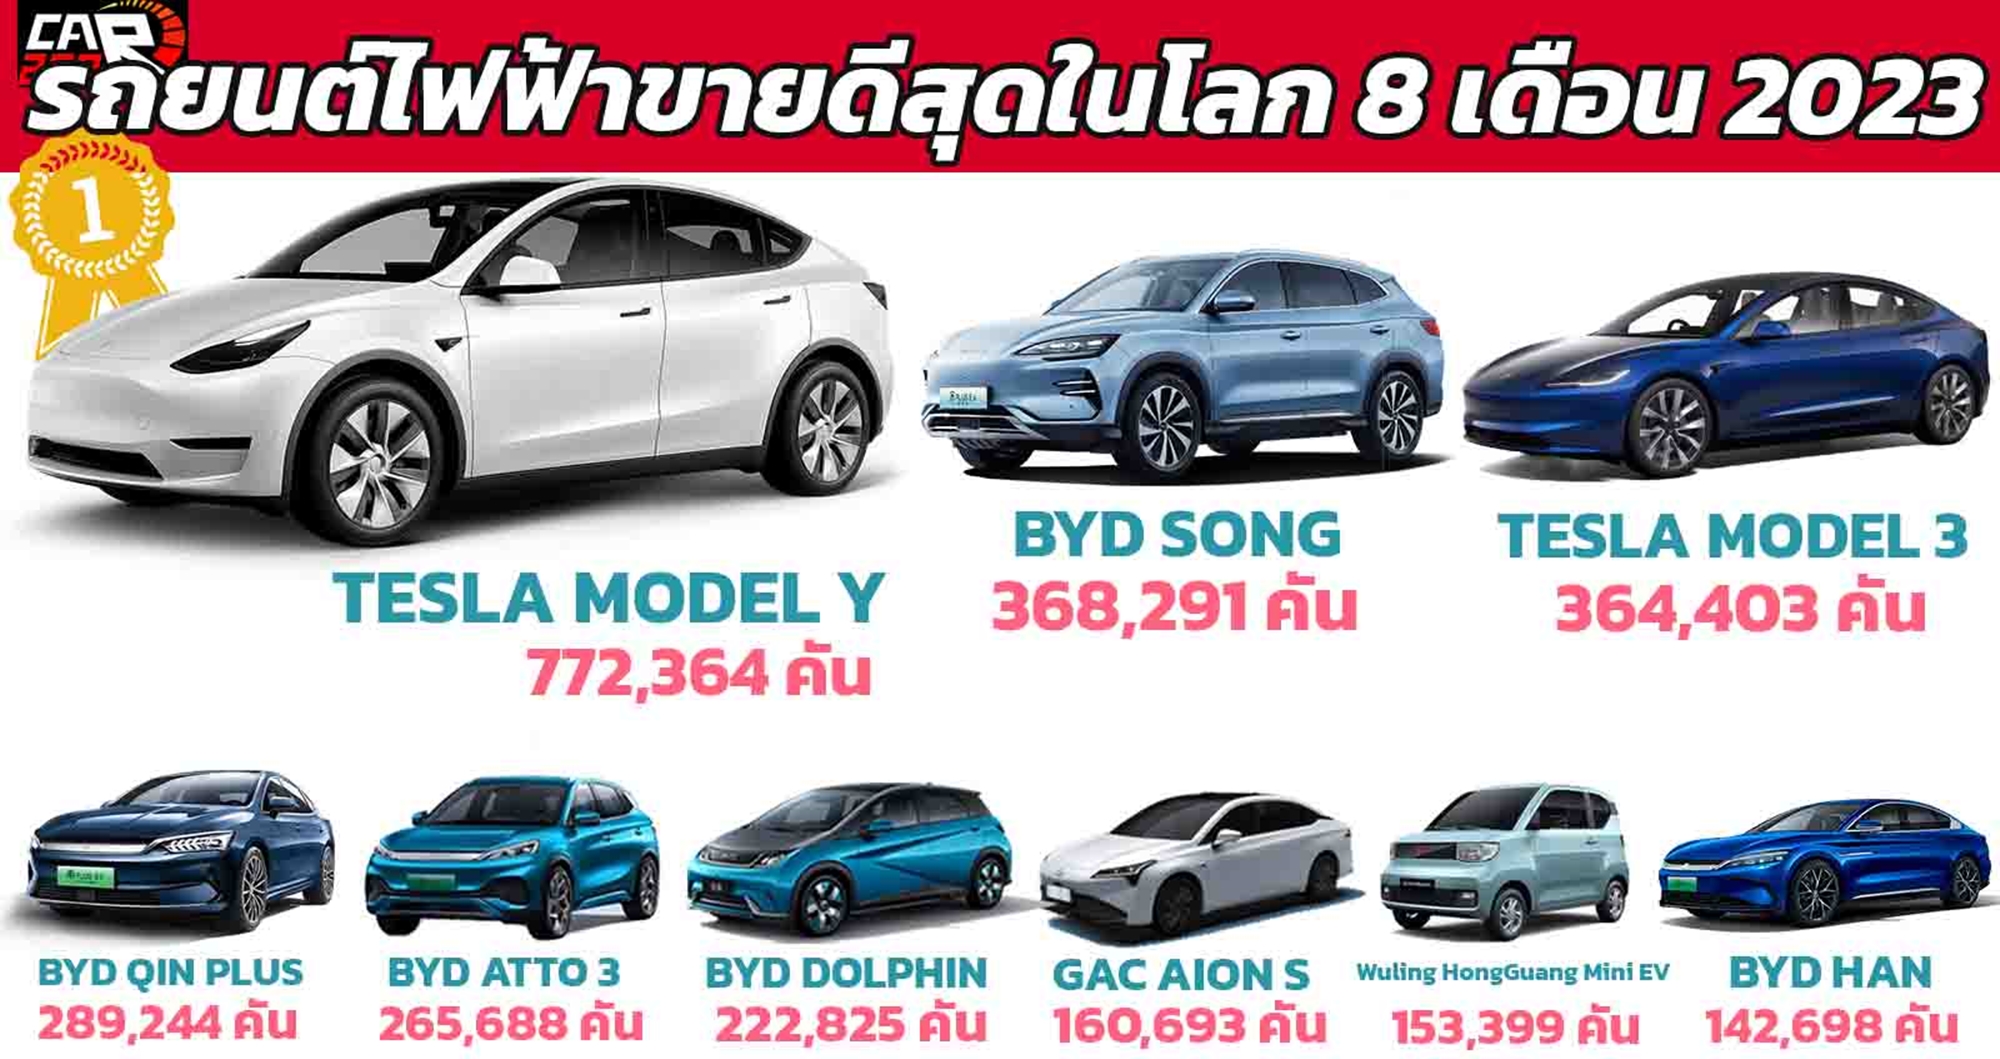 TESLA MODEL Y รถยนต์ไฟฟ้าขายดีในโลก 8 เดือนแรก 2023 BYD SONG อันดับ 2